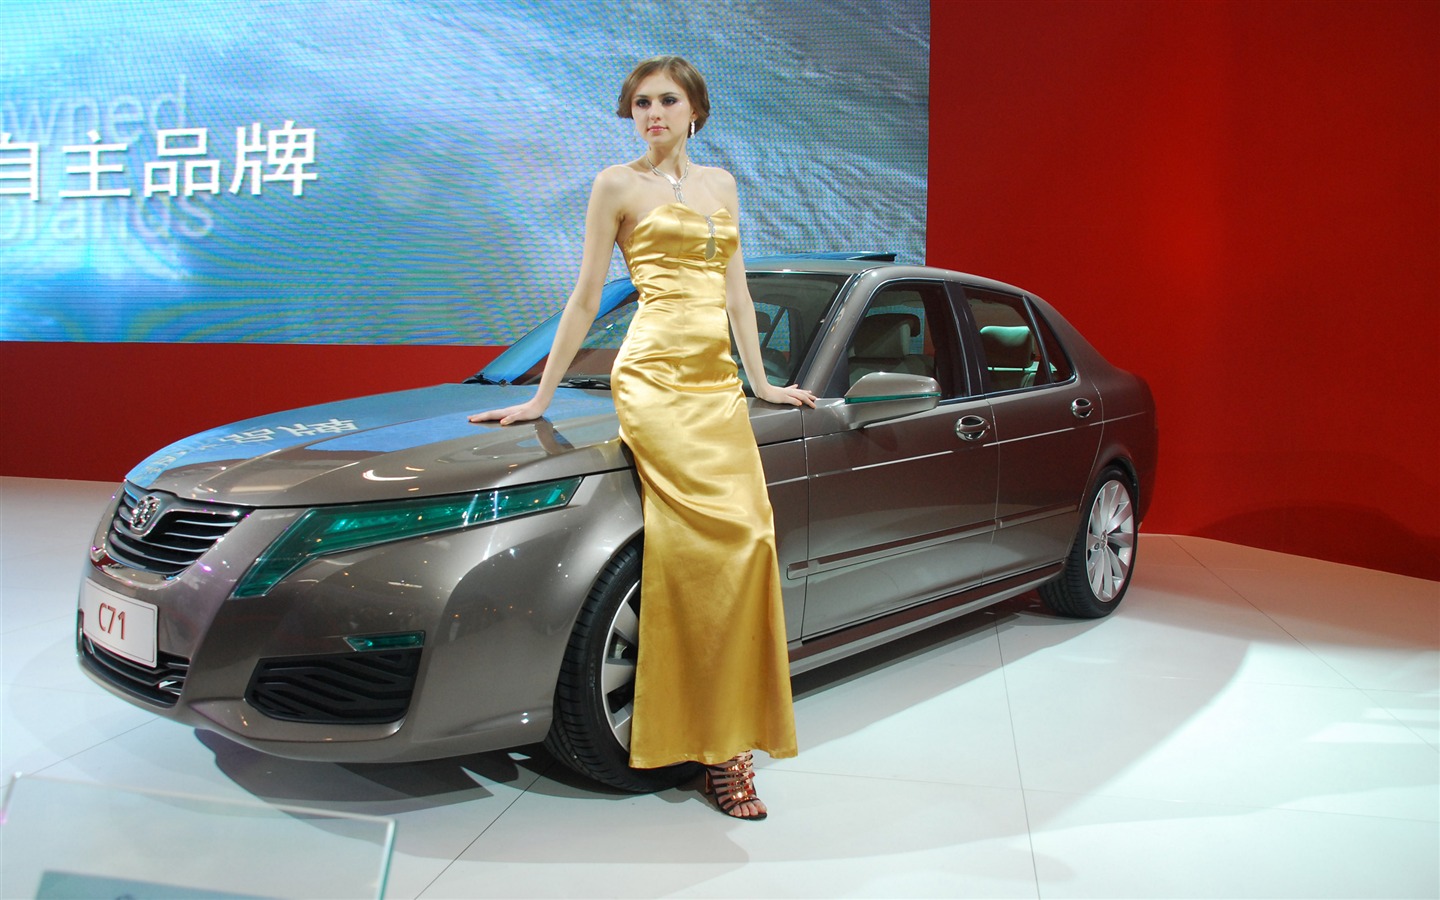 2010 Beijing International Auto Show (2) (z321x123 works) #2 - 1440x900